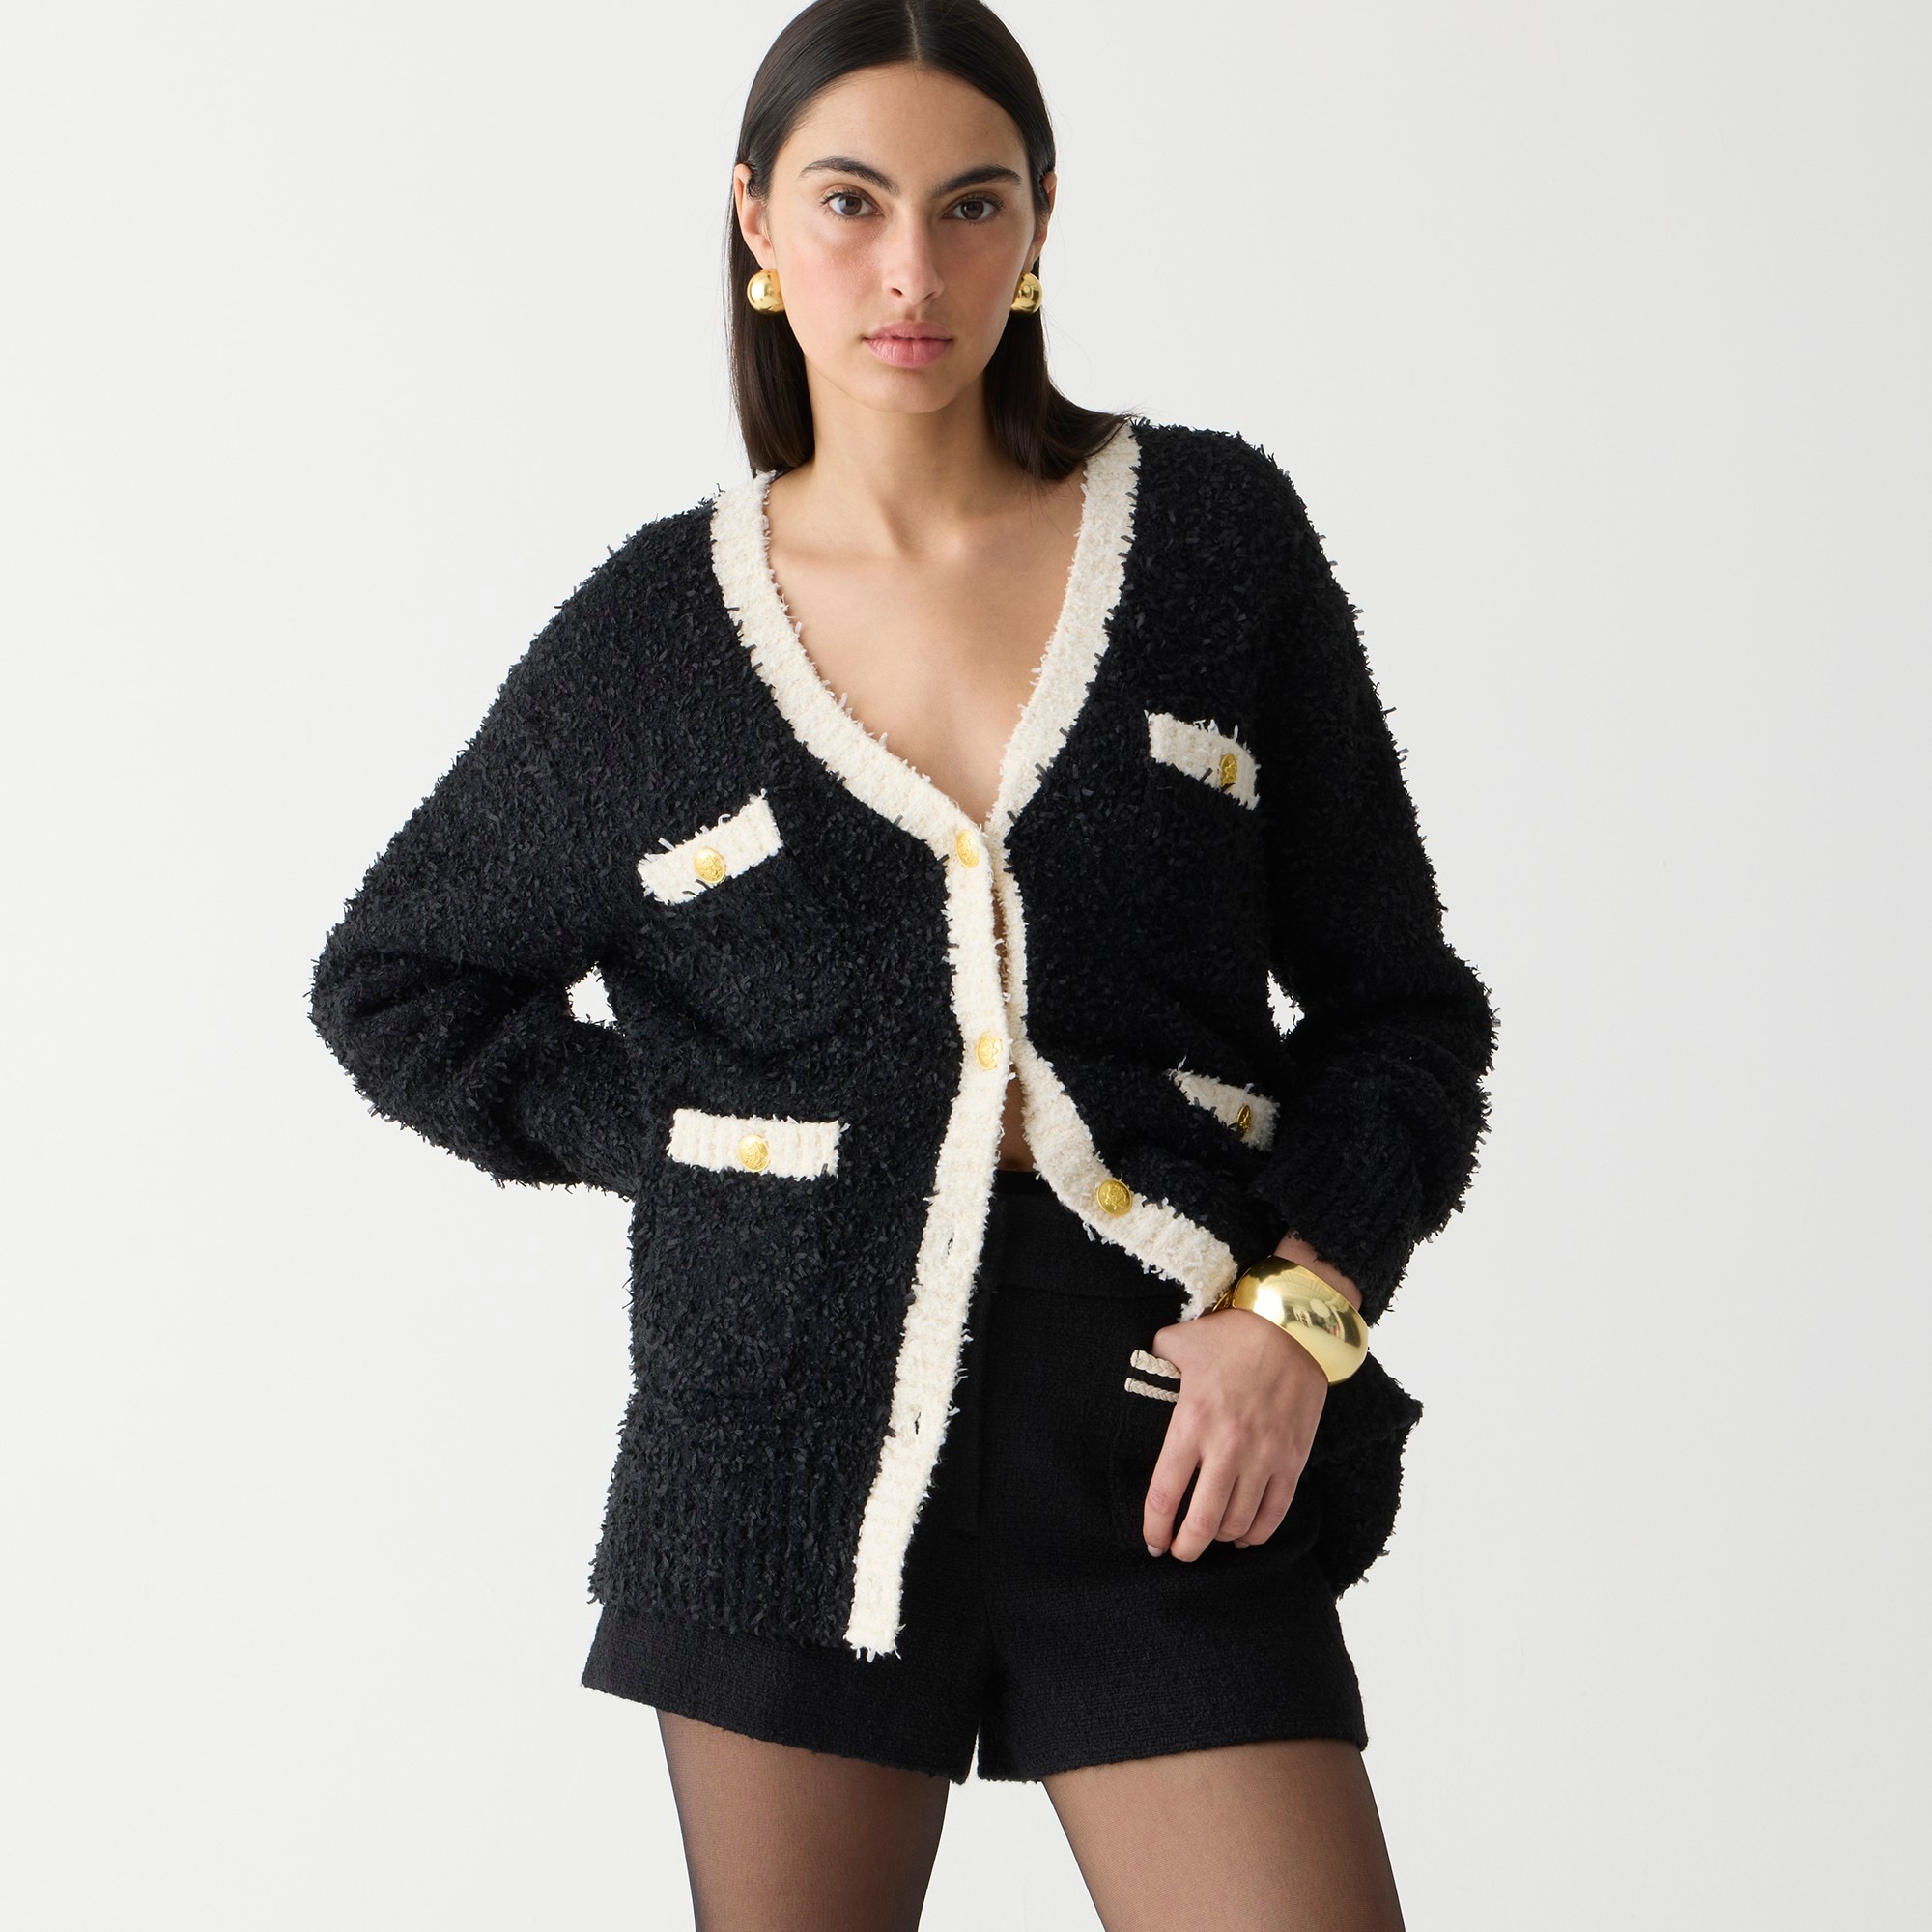 j.crew: longer sweater lady jacket in textured contrast yarn for women